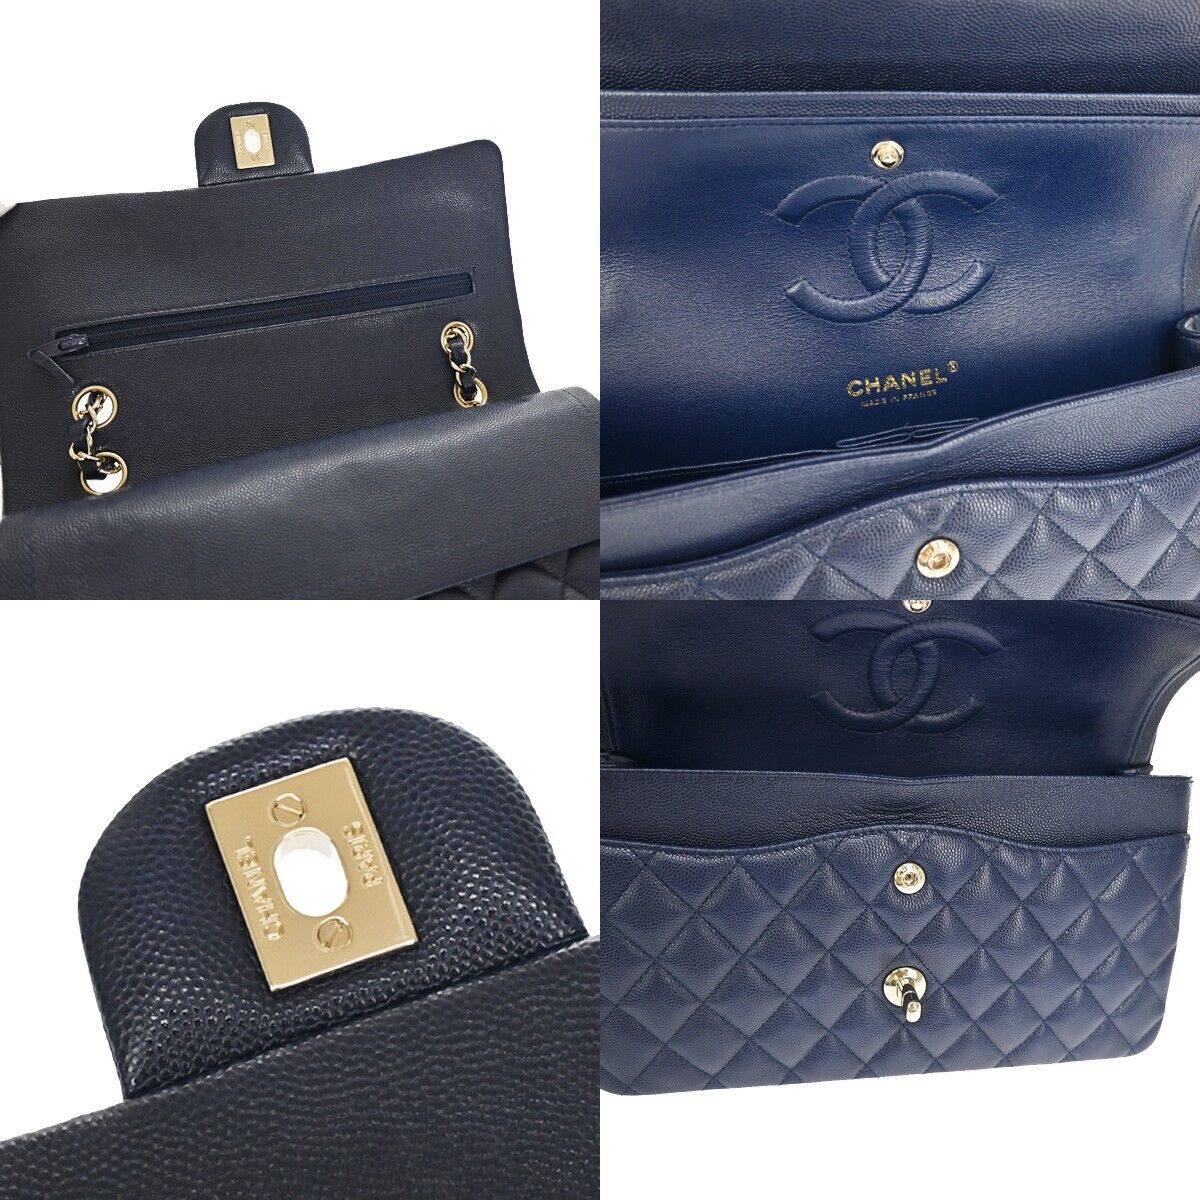 Chanel Women's Black Leather Shoulder Bag in Black